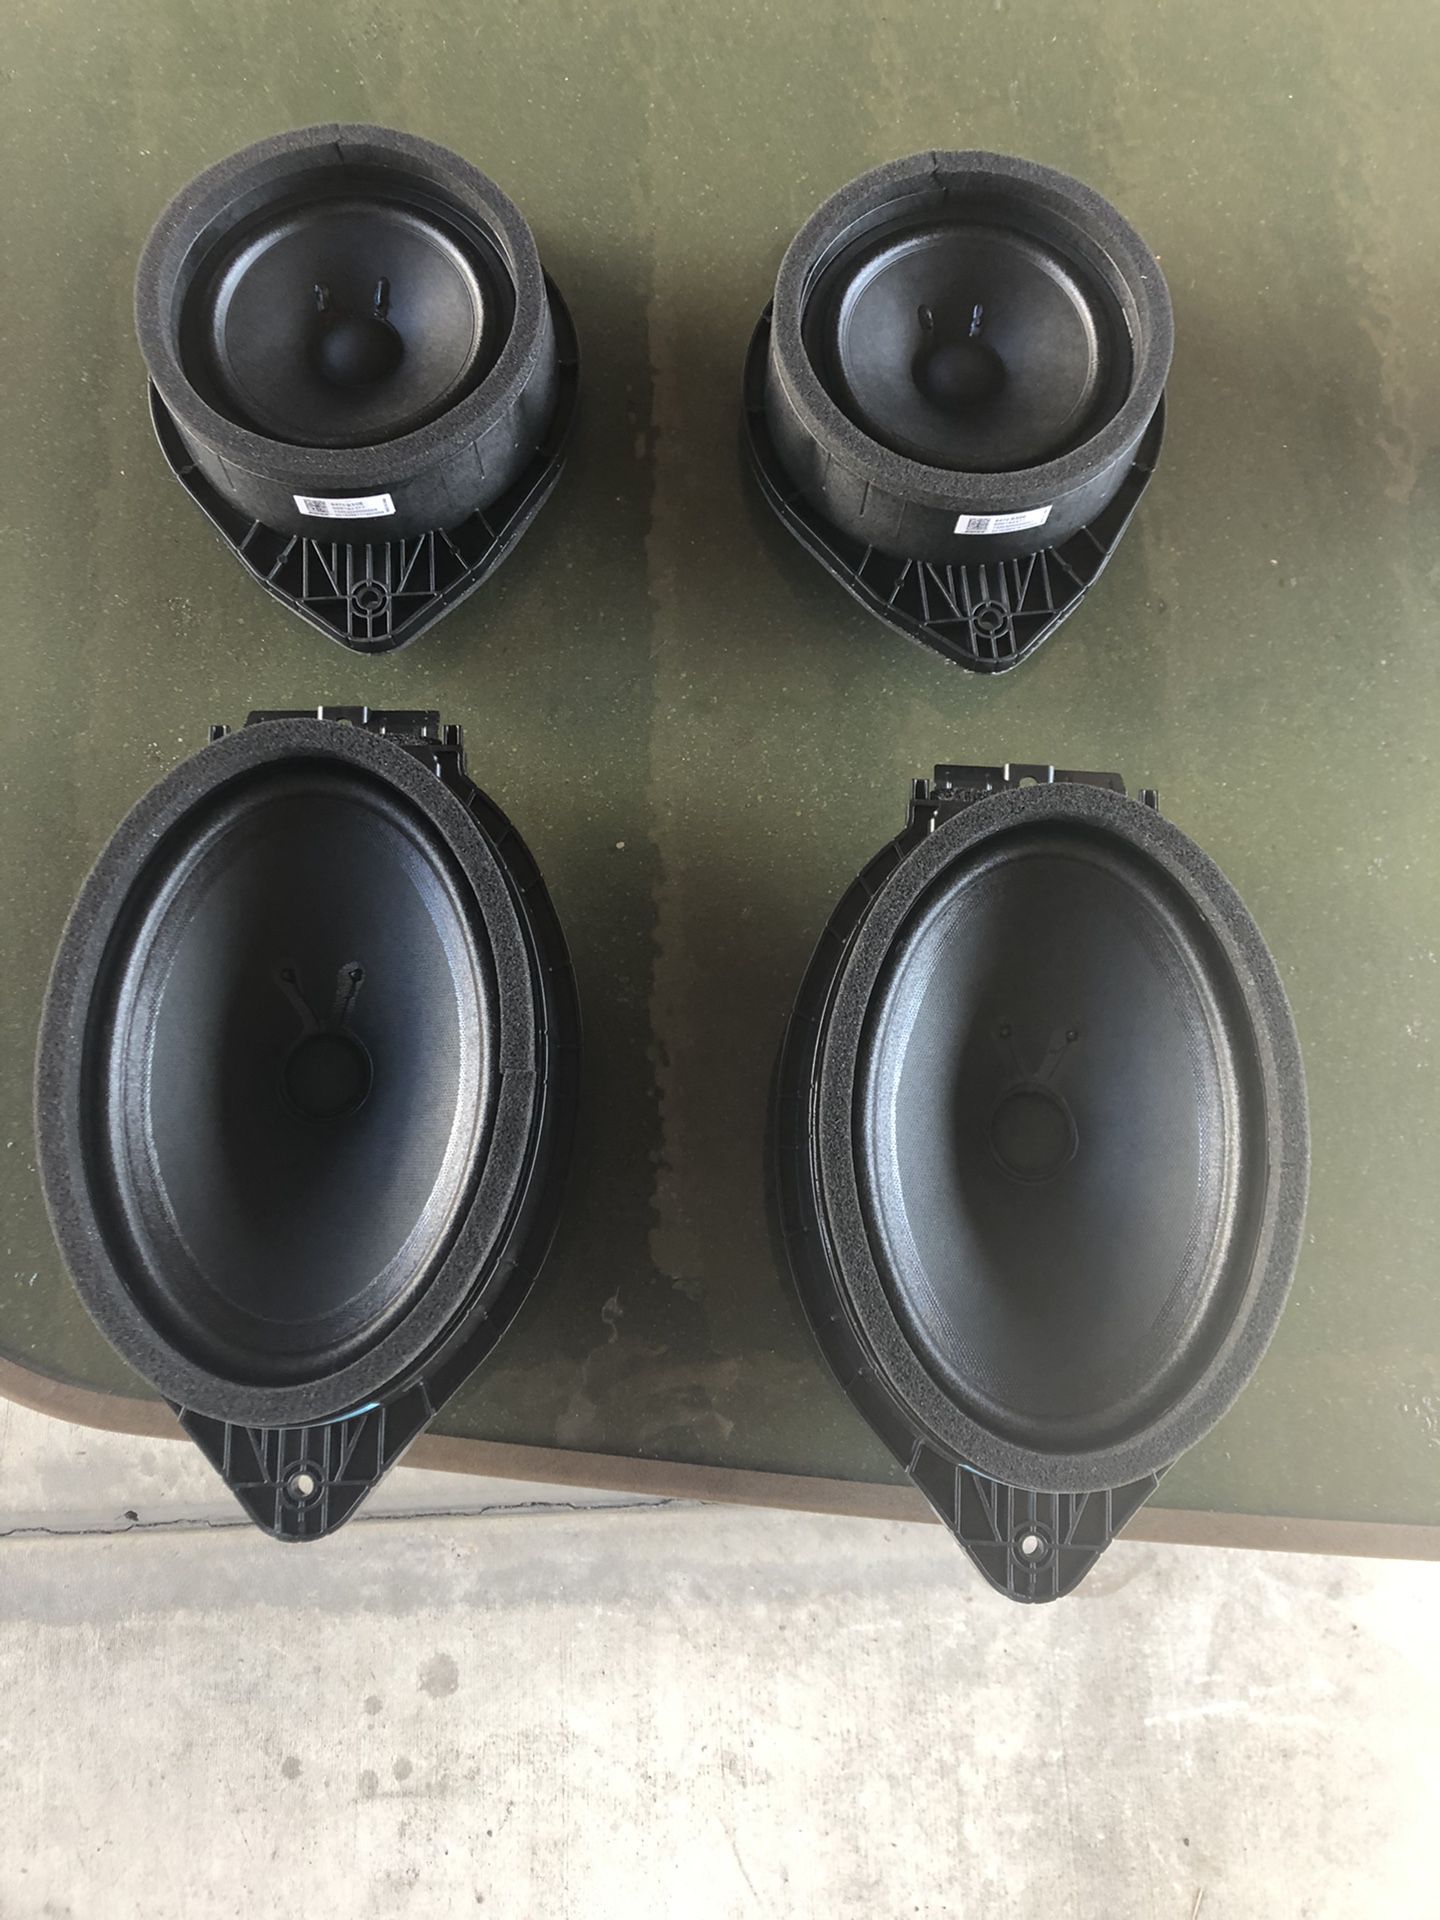 2020 Chevy Silverado speaker’s